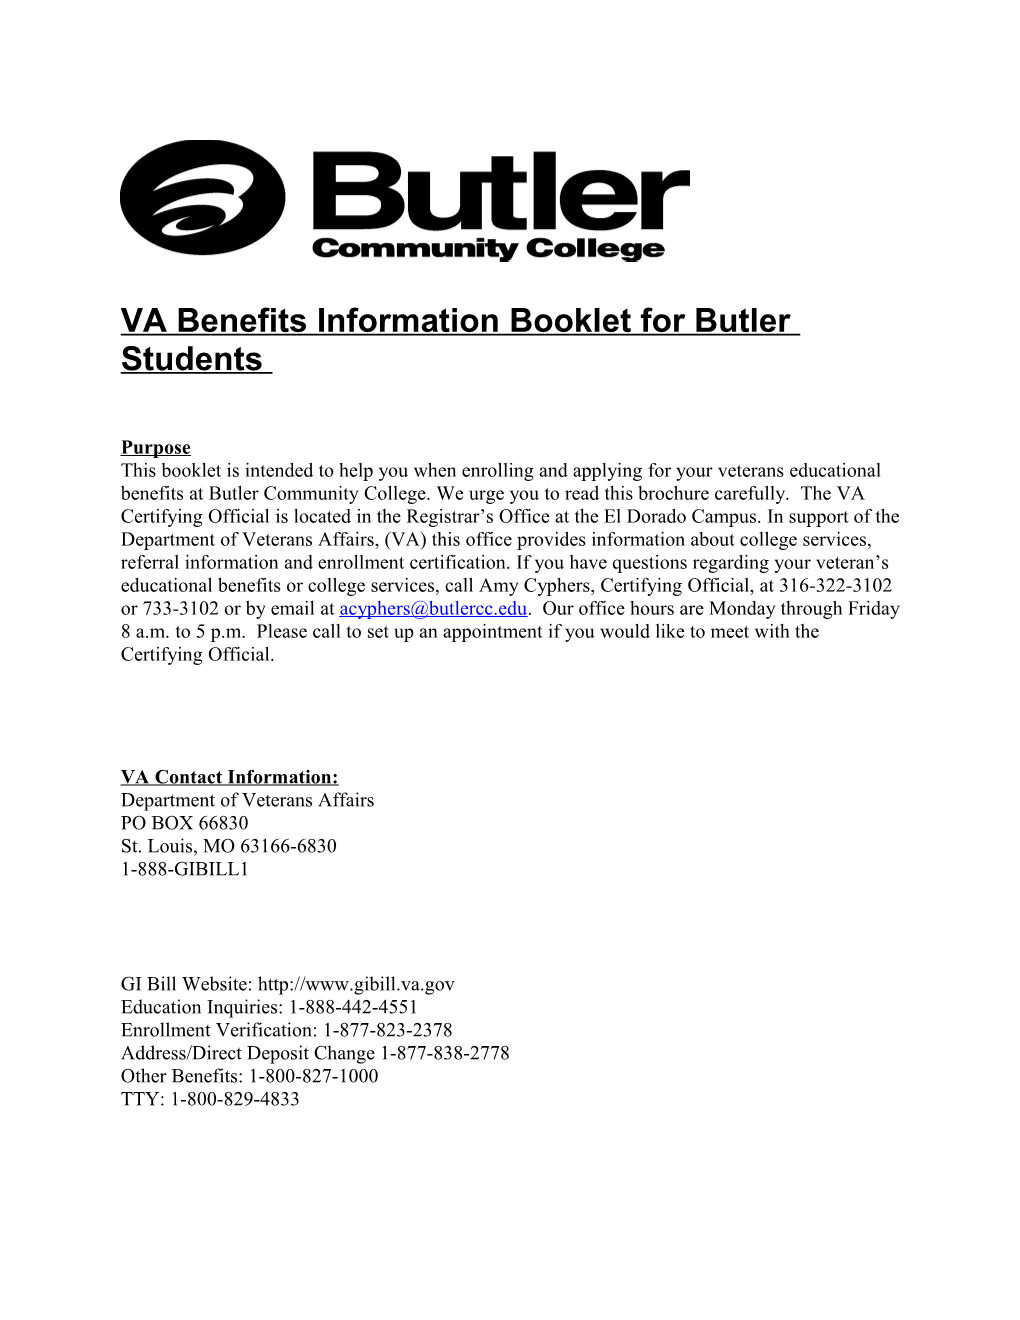 VA Benefits Information Booklet for Butler Students